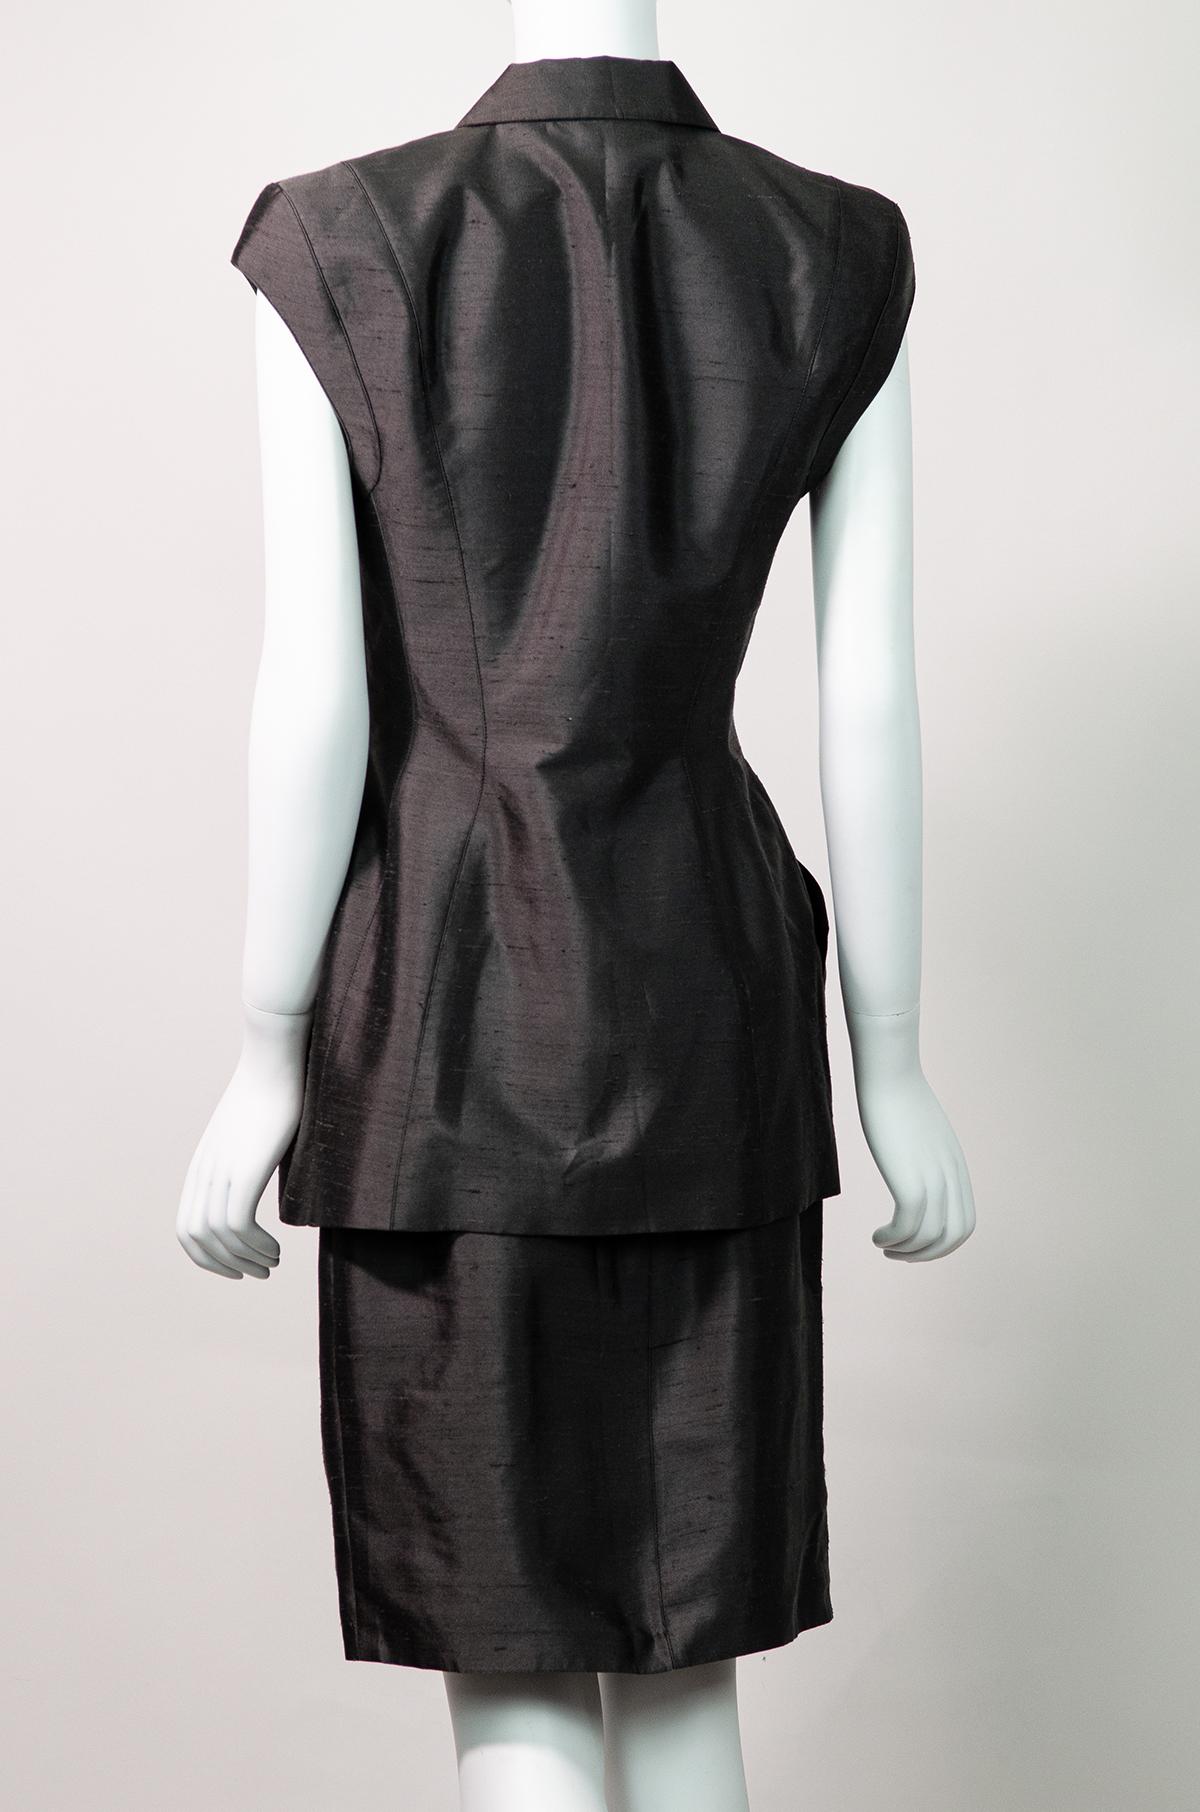 THIERRY MUGLER Tailleur jupe en soie texturée grise style futuriste, 1998 Excellent état - En vente à Berlin, BE